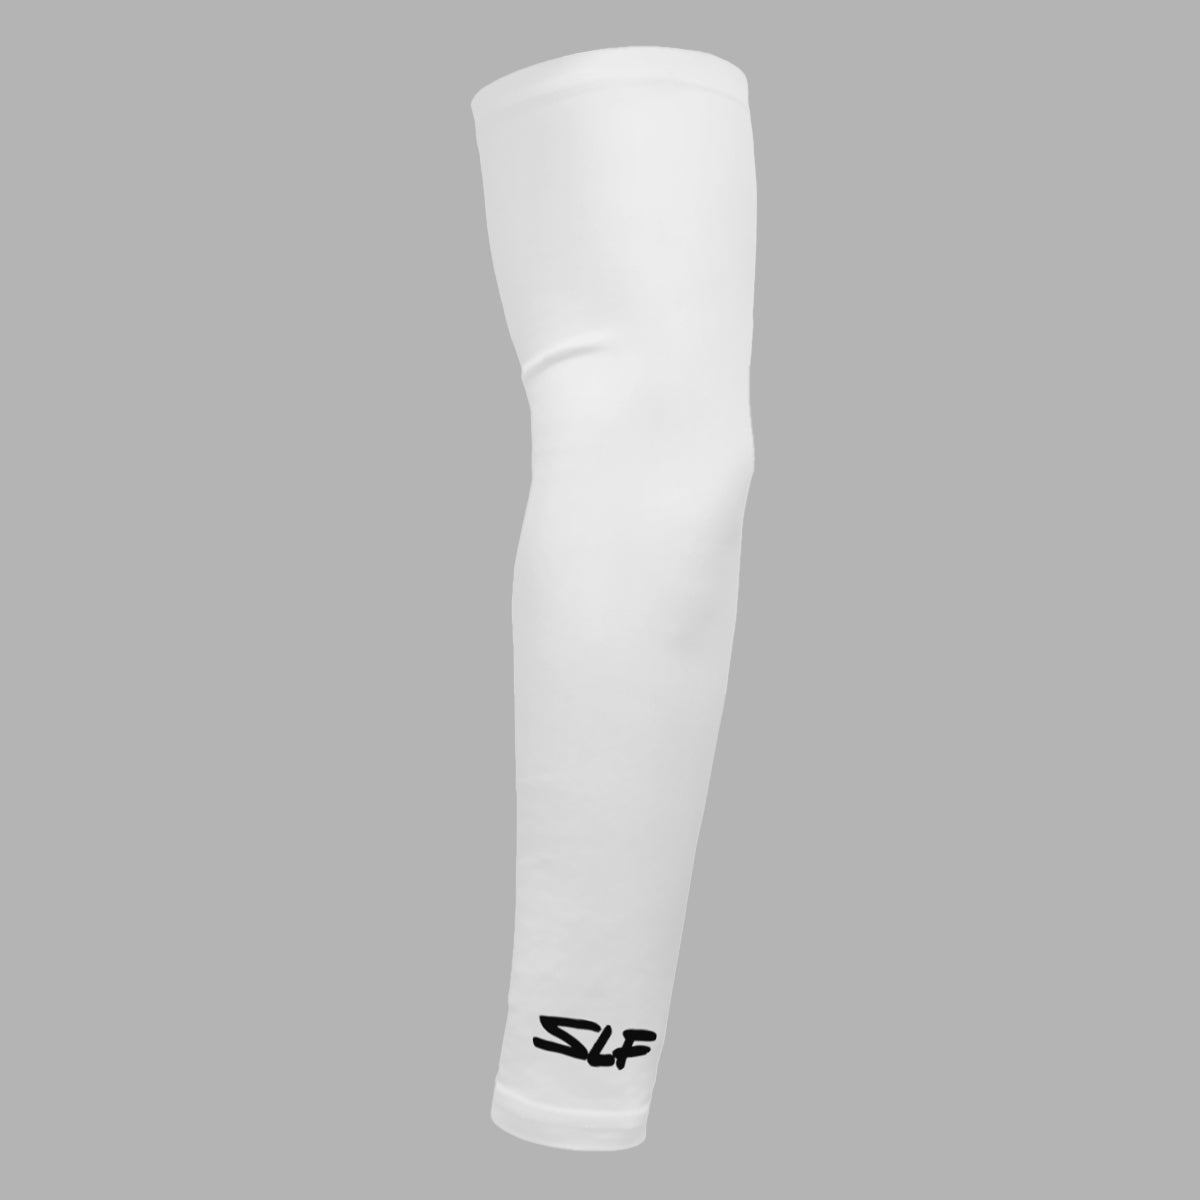 Basic White SLF Basketball Shooter Sleeve